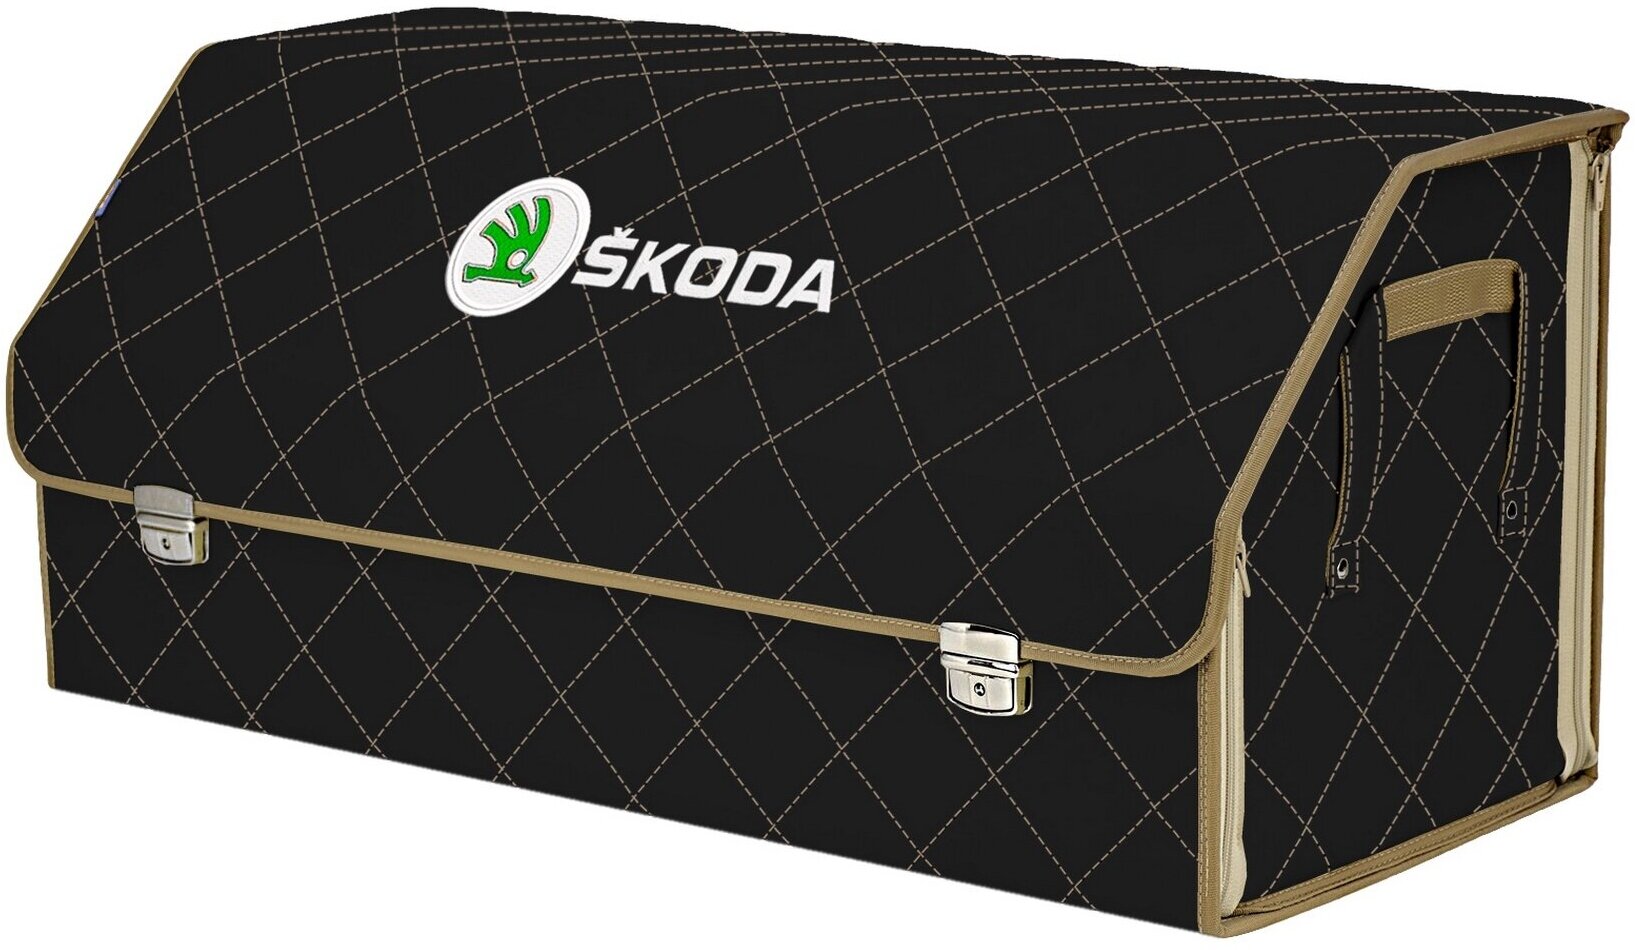 Органайзер-саквояж в багажник "Союз Премиум" (размер XXL). Цвет: черный с бежевой прострочкой Ромб и вышивкой Skoda (Шкода).